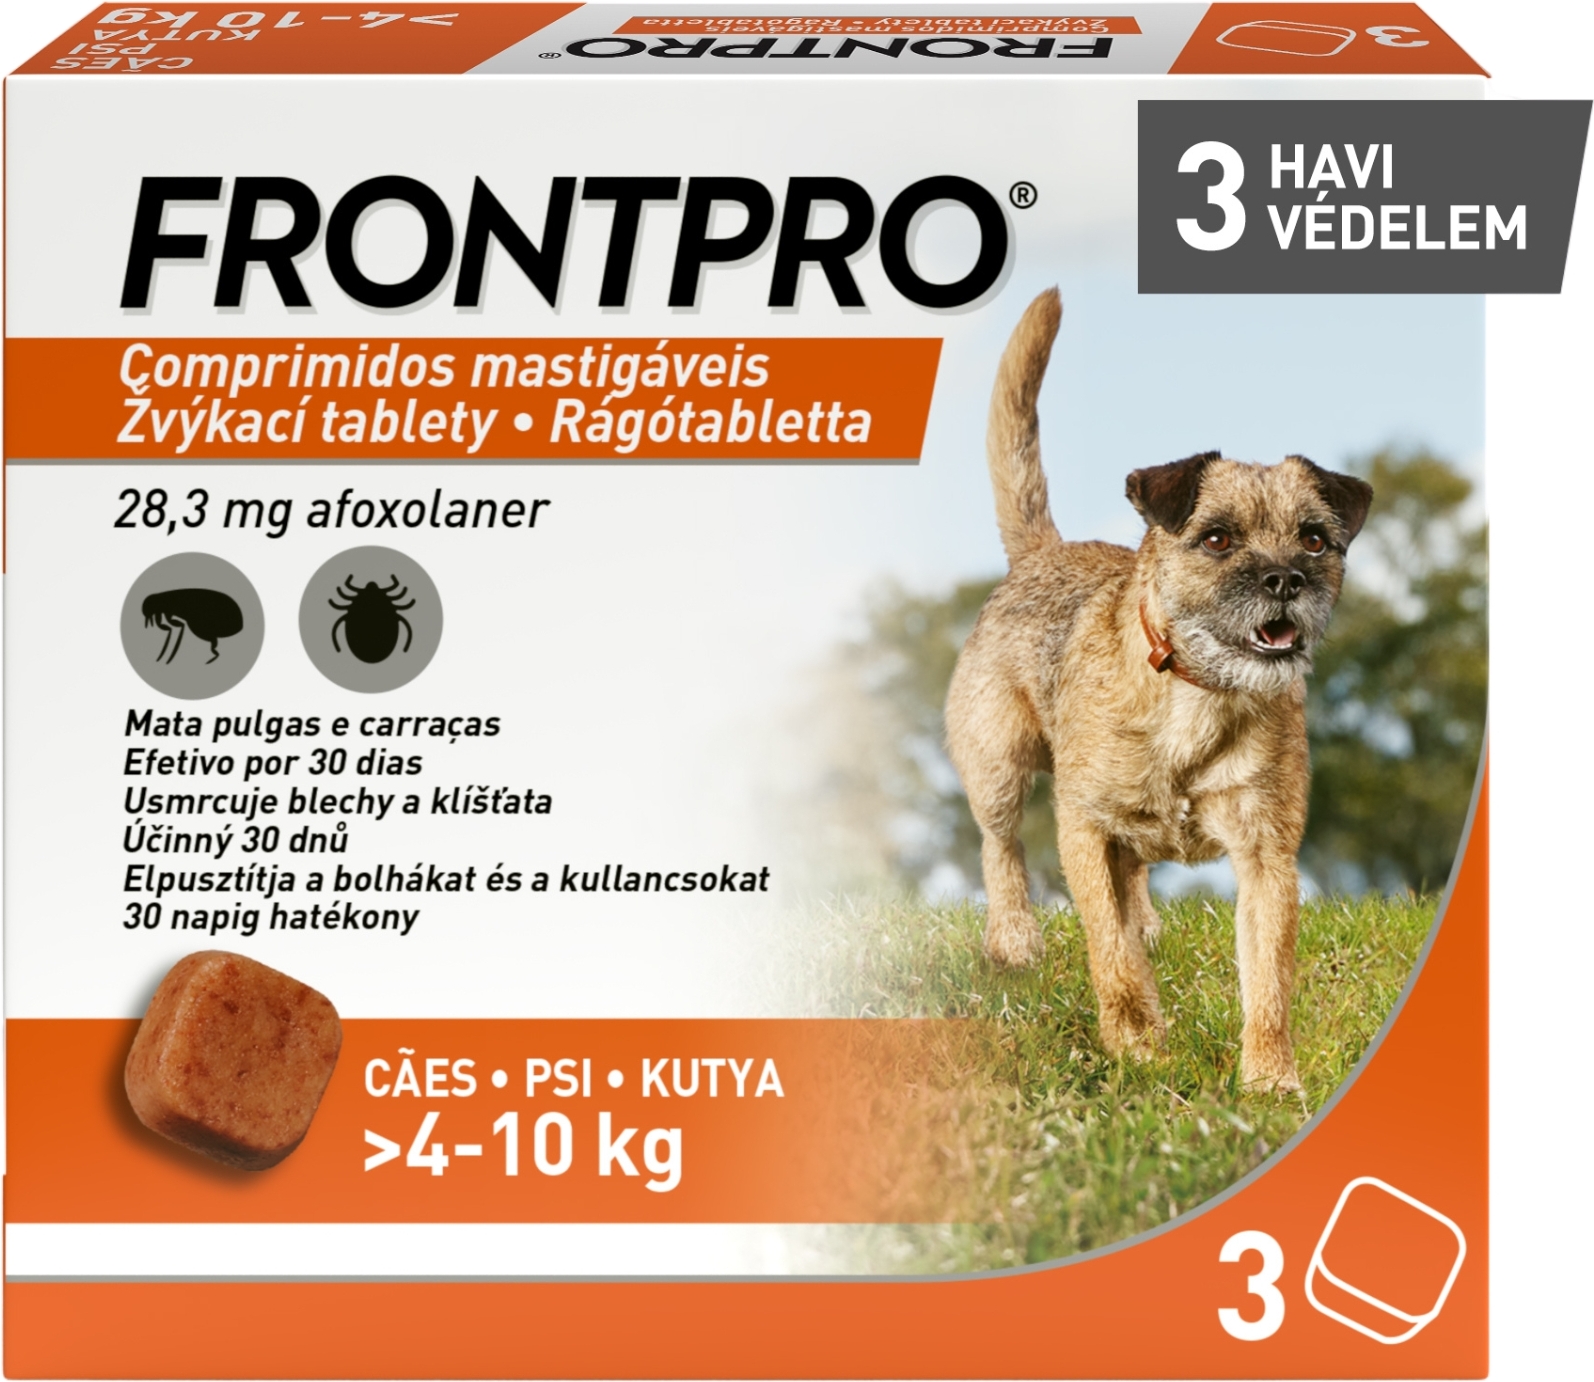 Frontpro tablete împotriva puricilor și căpușelor pentru câini - zoom